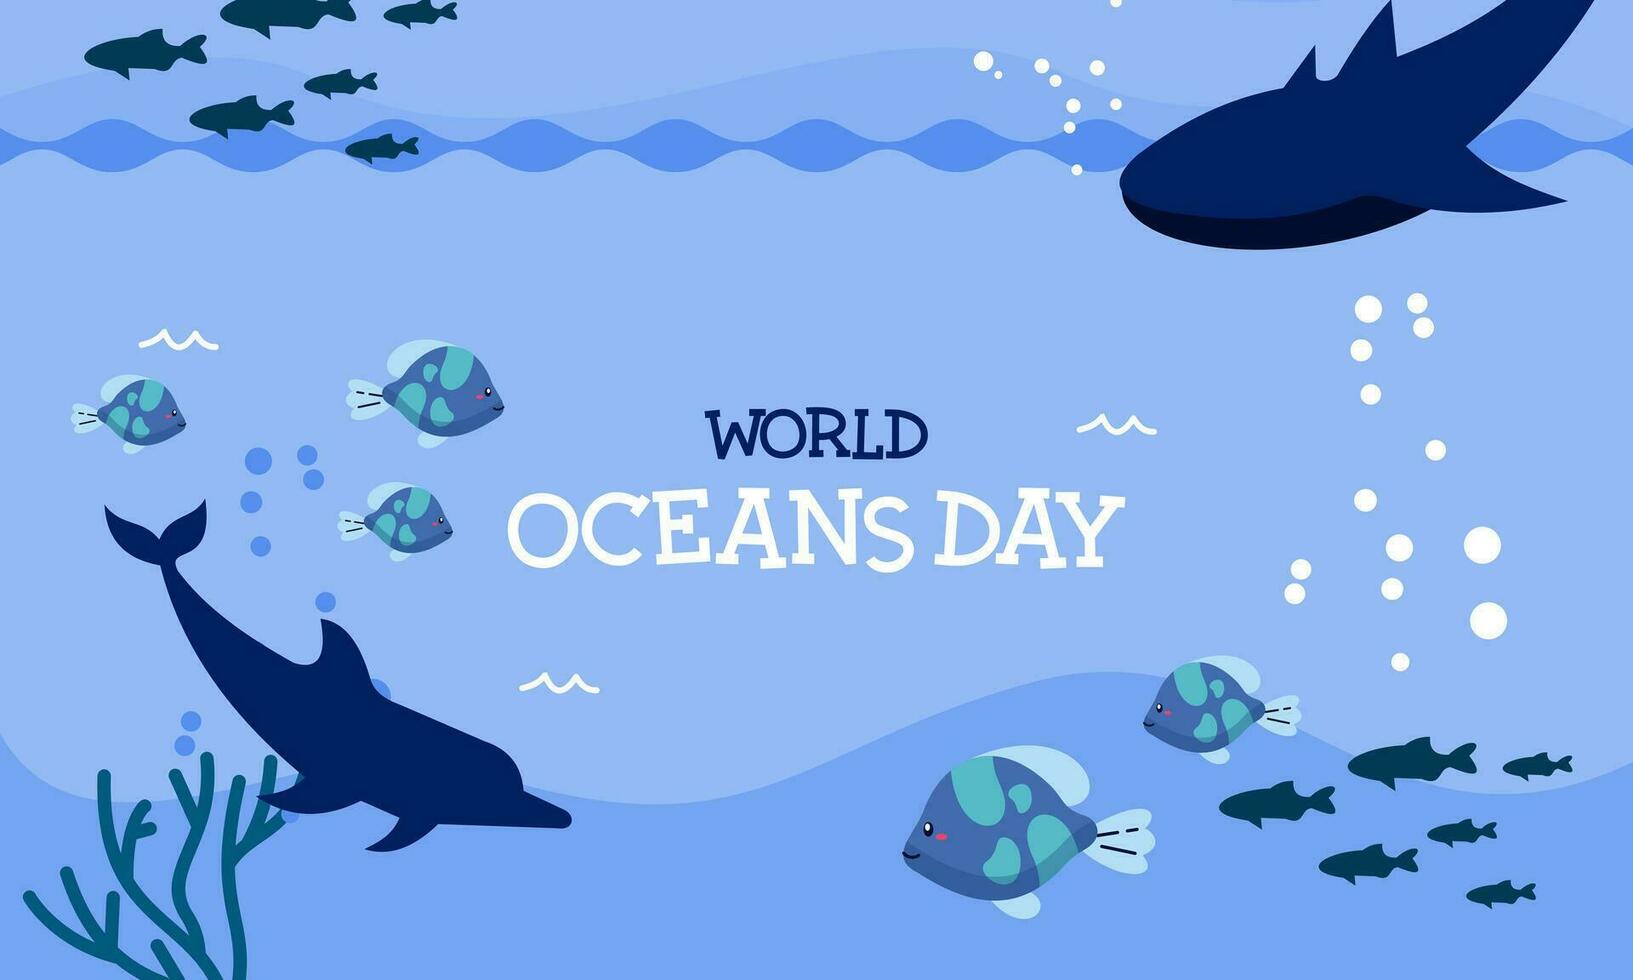 mundo Oceano día dibujos animados ilustración con submarino paisaje dedicado vector